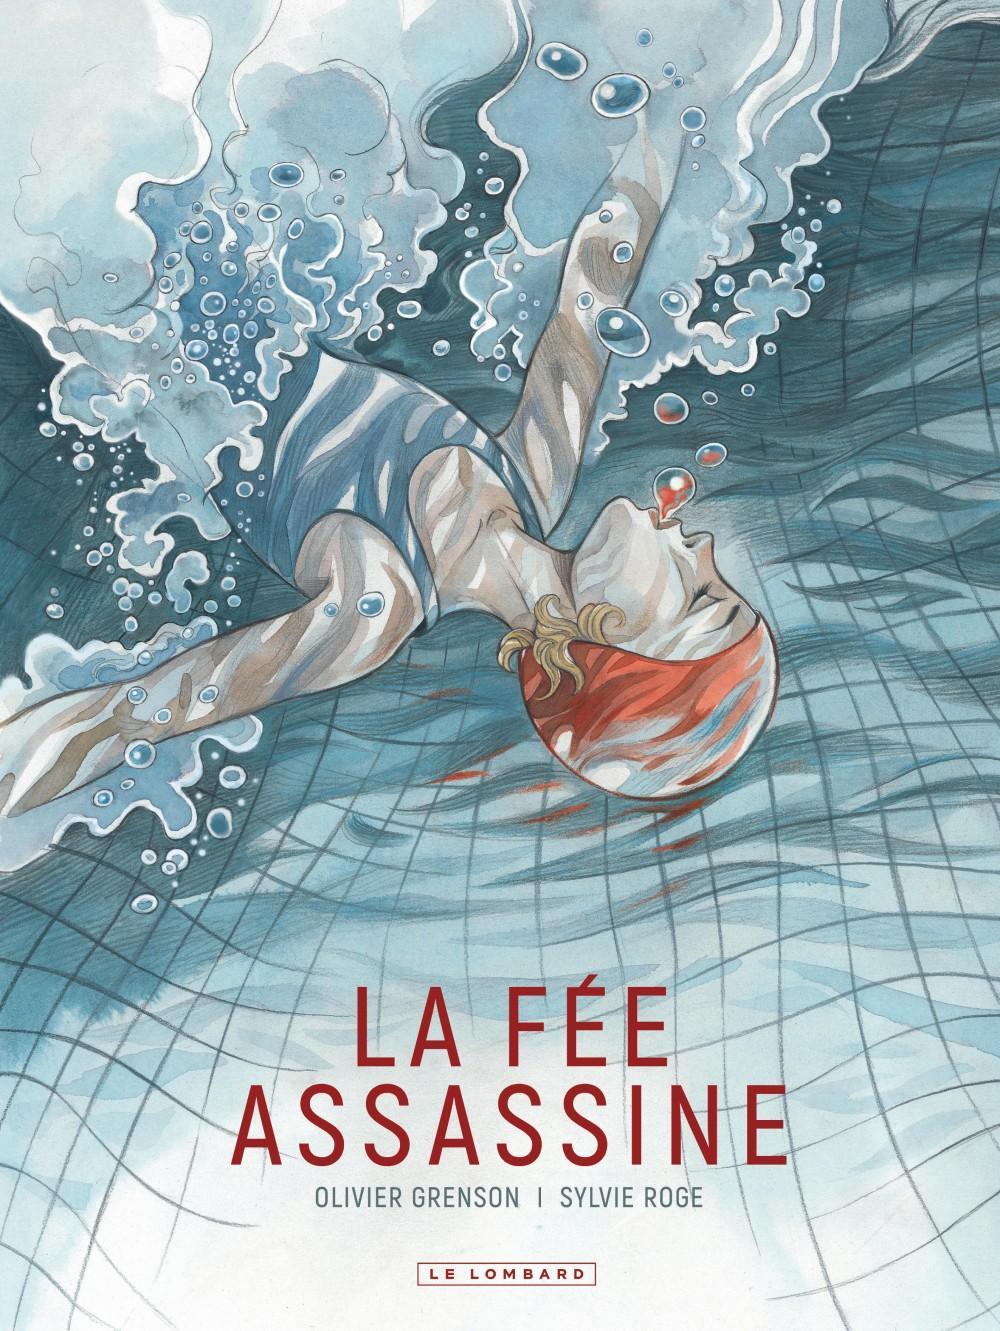 La fée assassine (French language, 2021, Le Lombard)